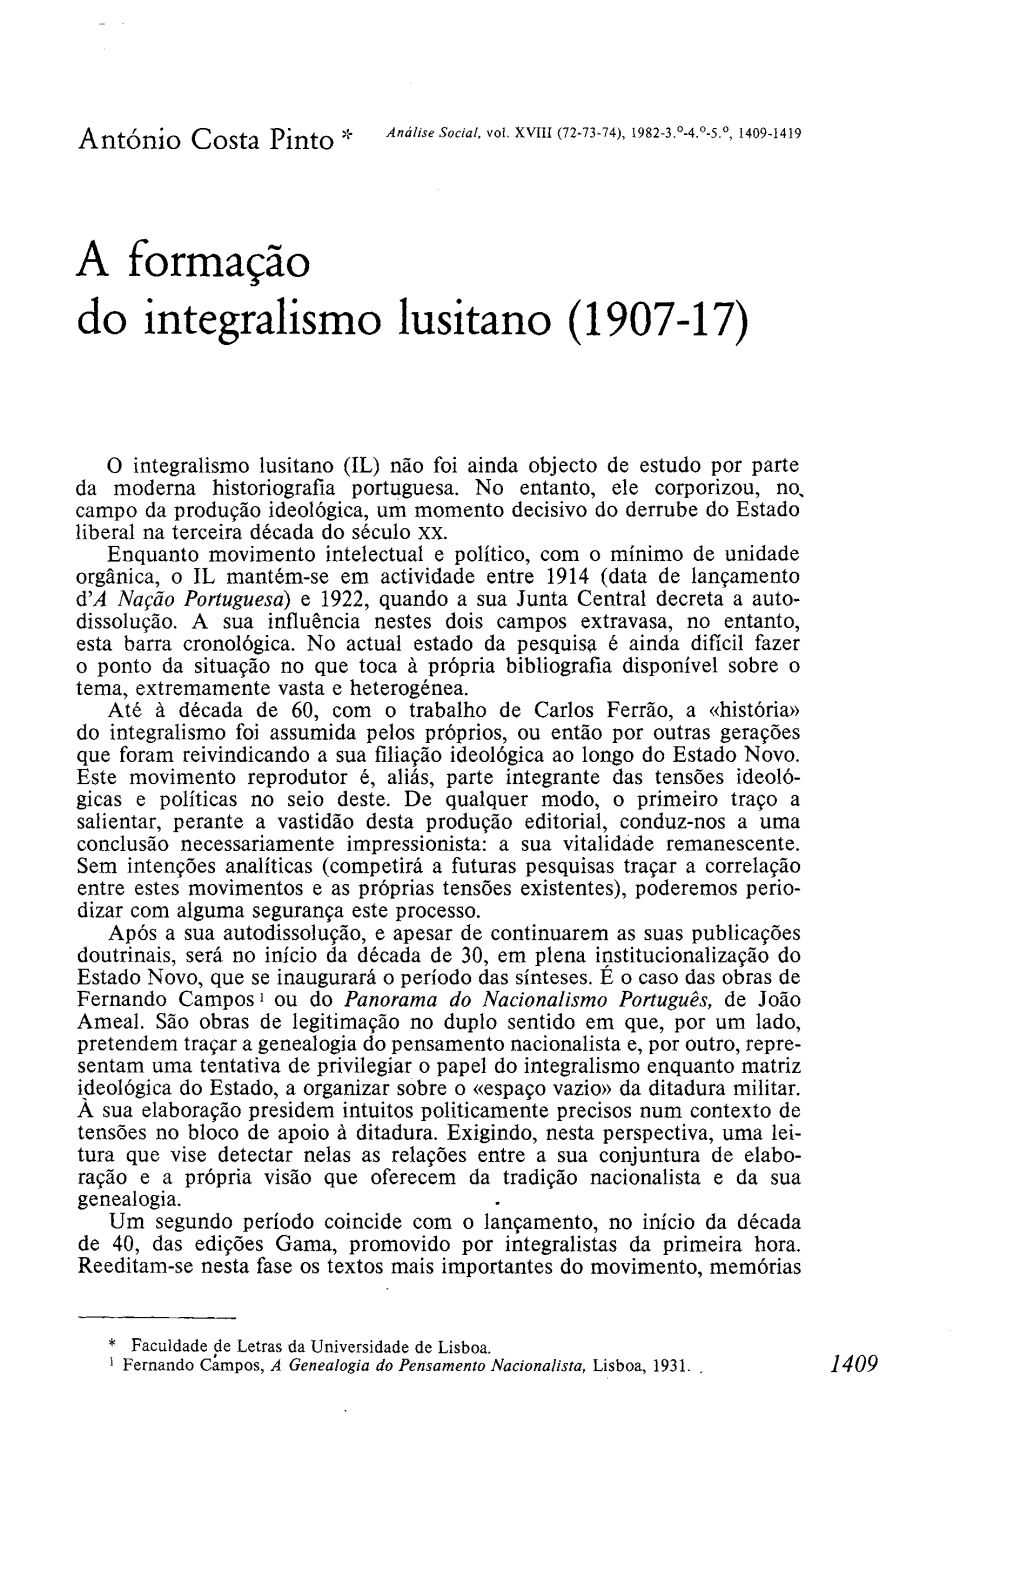 A Formação Do Integralismo Lusitano (1907-17)